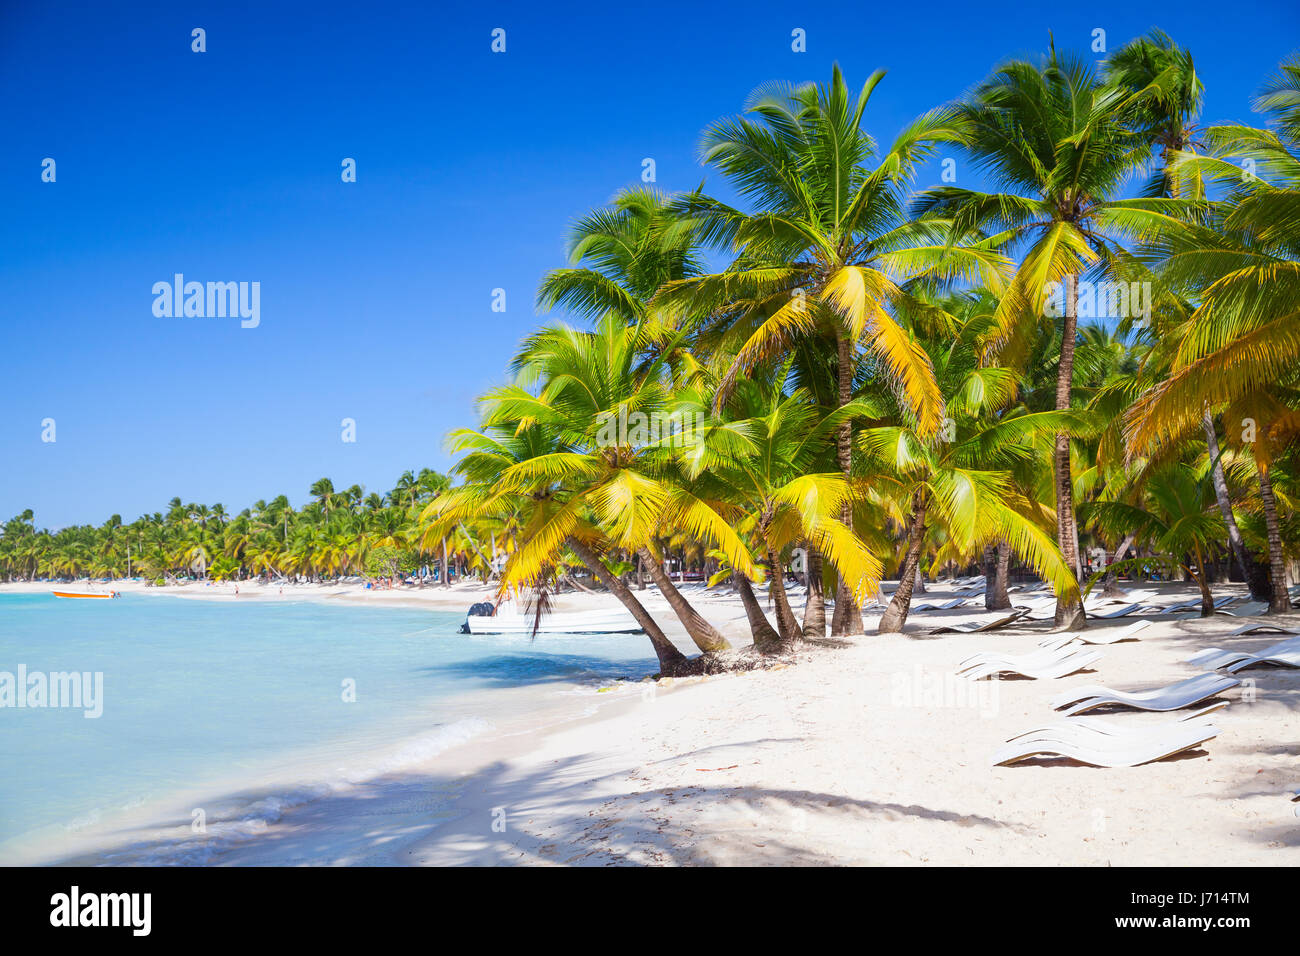 Las palmeras crecen en la playa de arena. Costa del Mar Caribe. República Dominicana el paisaje, la isla Saona, el popular complejo turístico Foto de stock